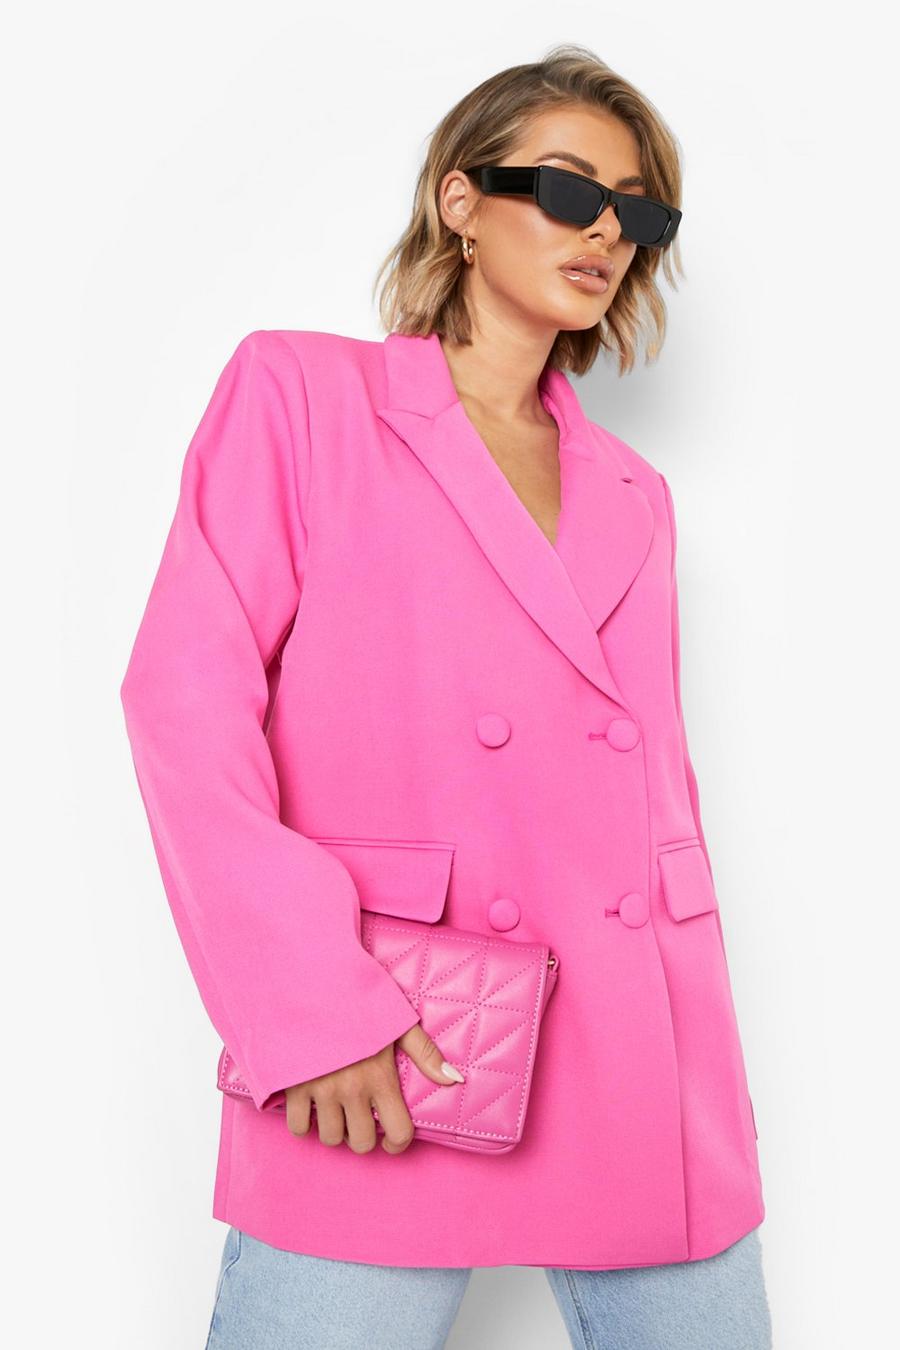 Blazer doppio petto a colori accesi Mix & Match, Bright pink image number 1